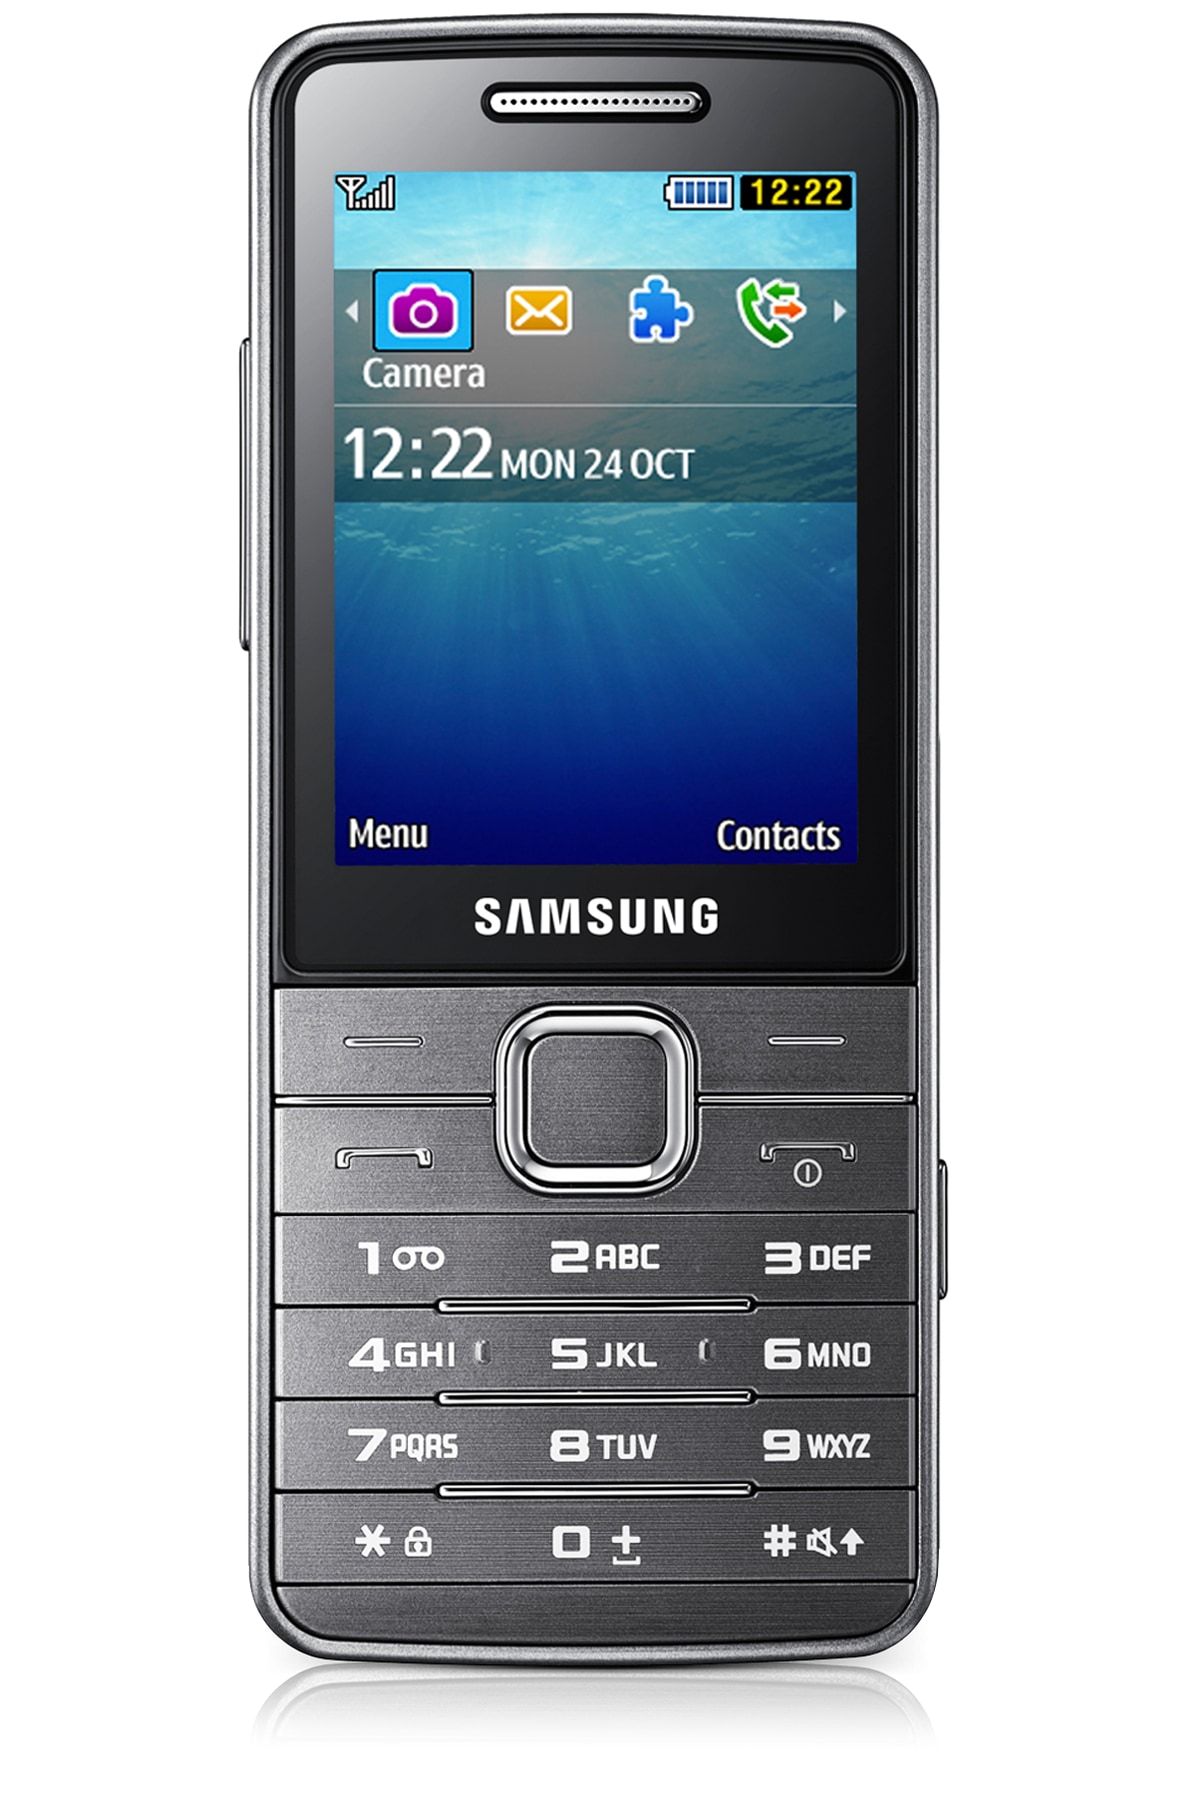 Samsung S5610 | Samsung Support UK1200 x 1800